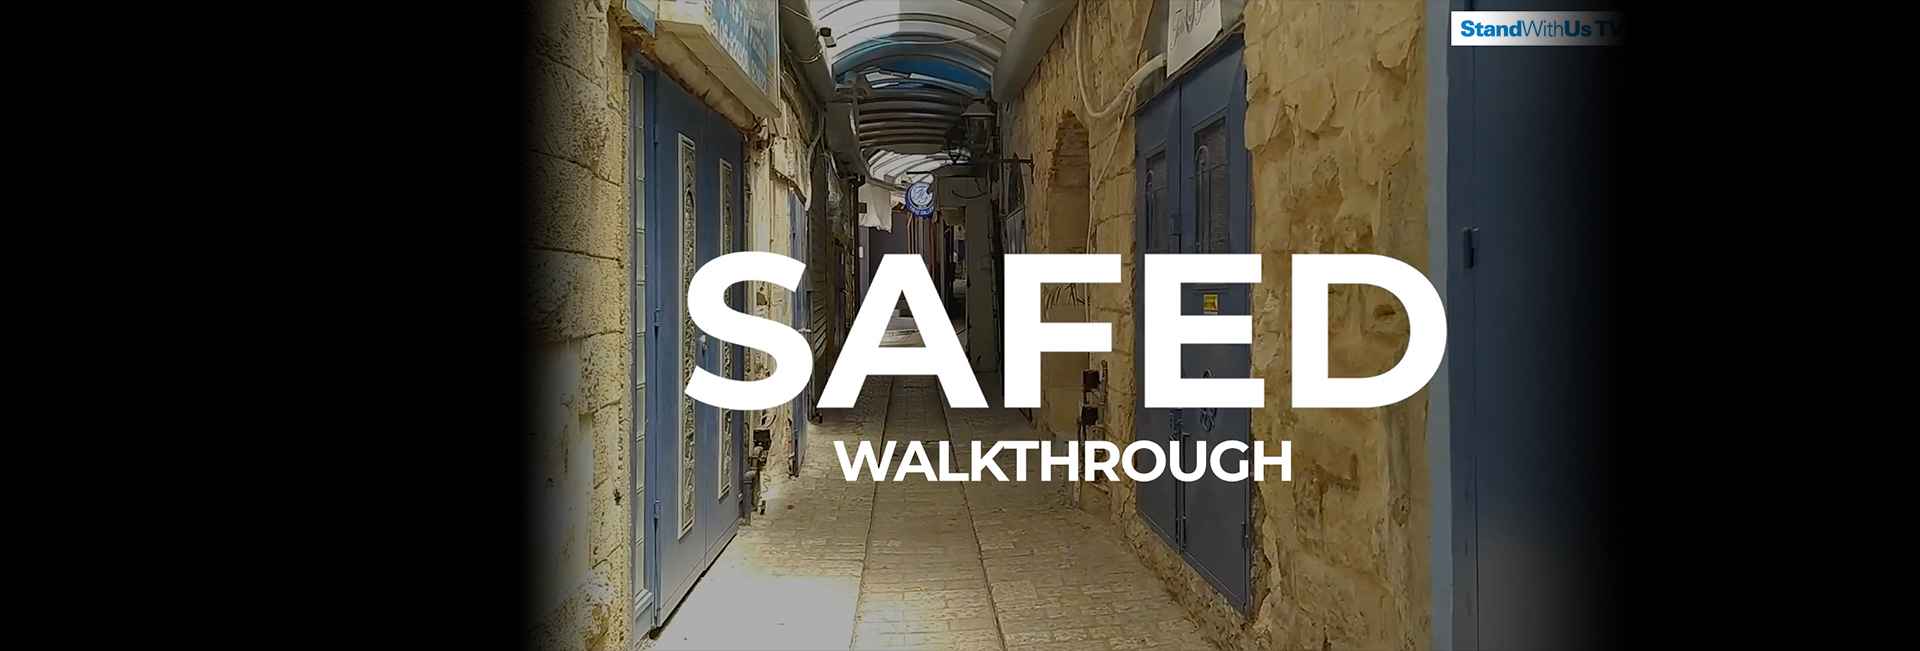 Safed | WalkThrough